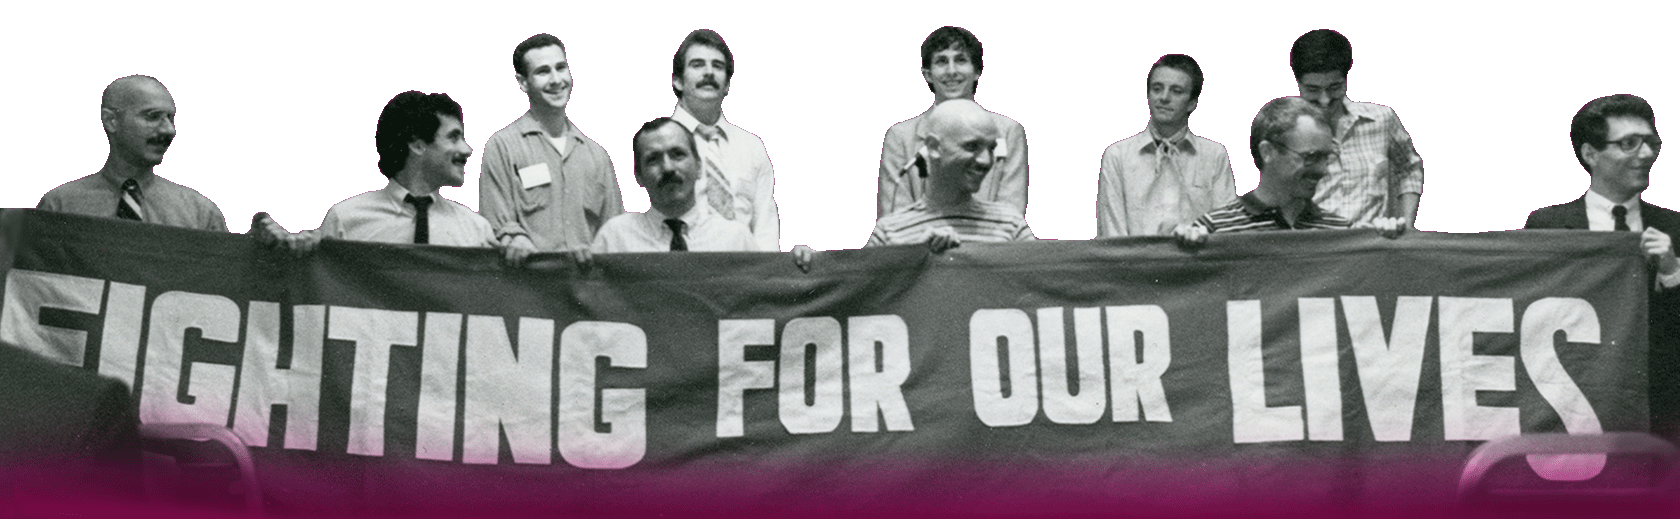 Un grupo de once hombres sostienen una pendón con letras blancas que dice “Luchamos por nuestra vida”.